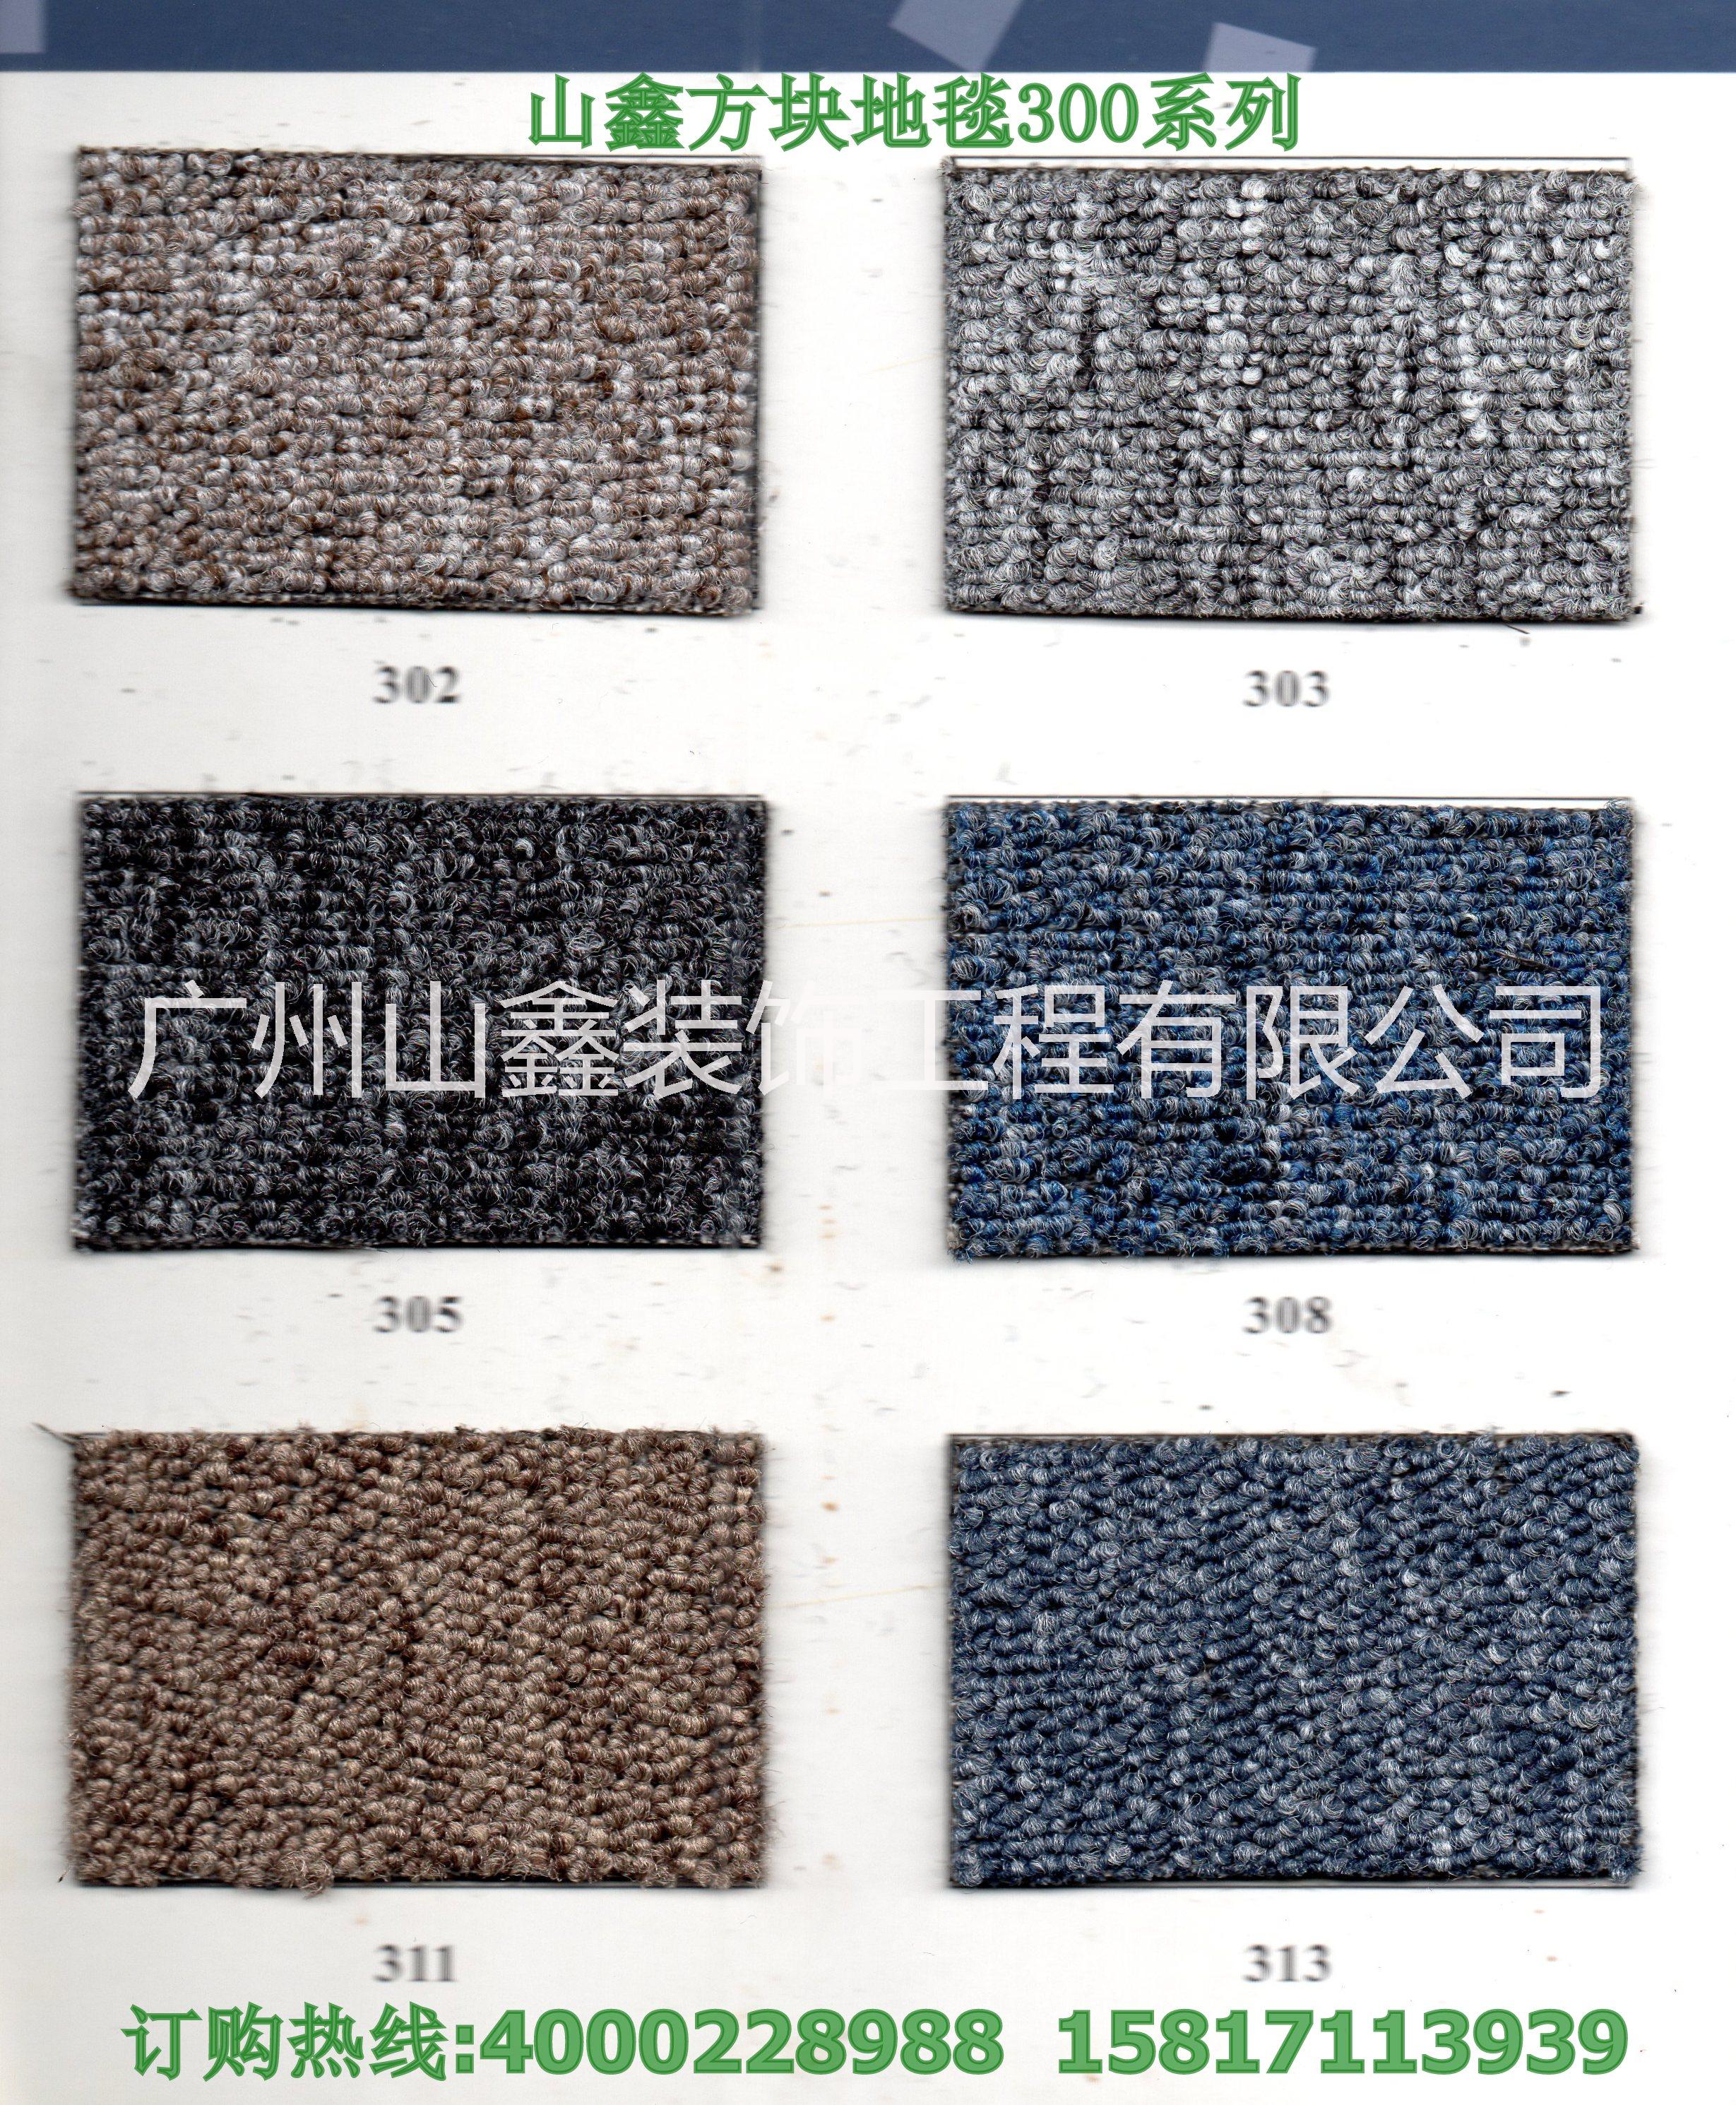 广州市广州方块地毯厂价大促销26元厂家供应广州方块地毯厂价大促销26元/平方